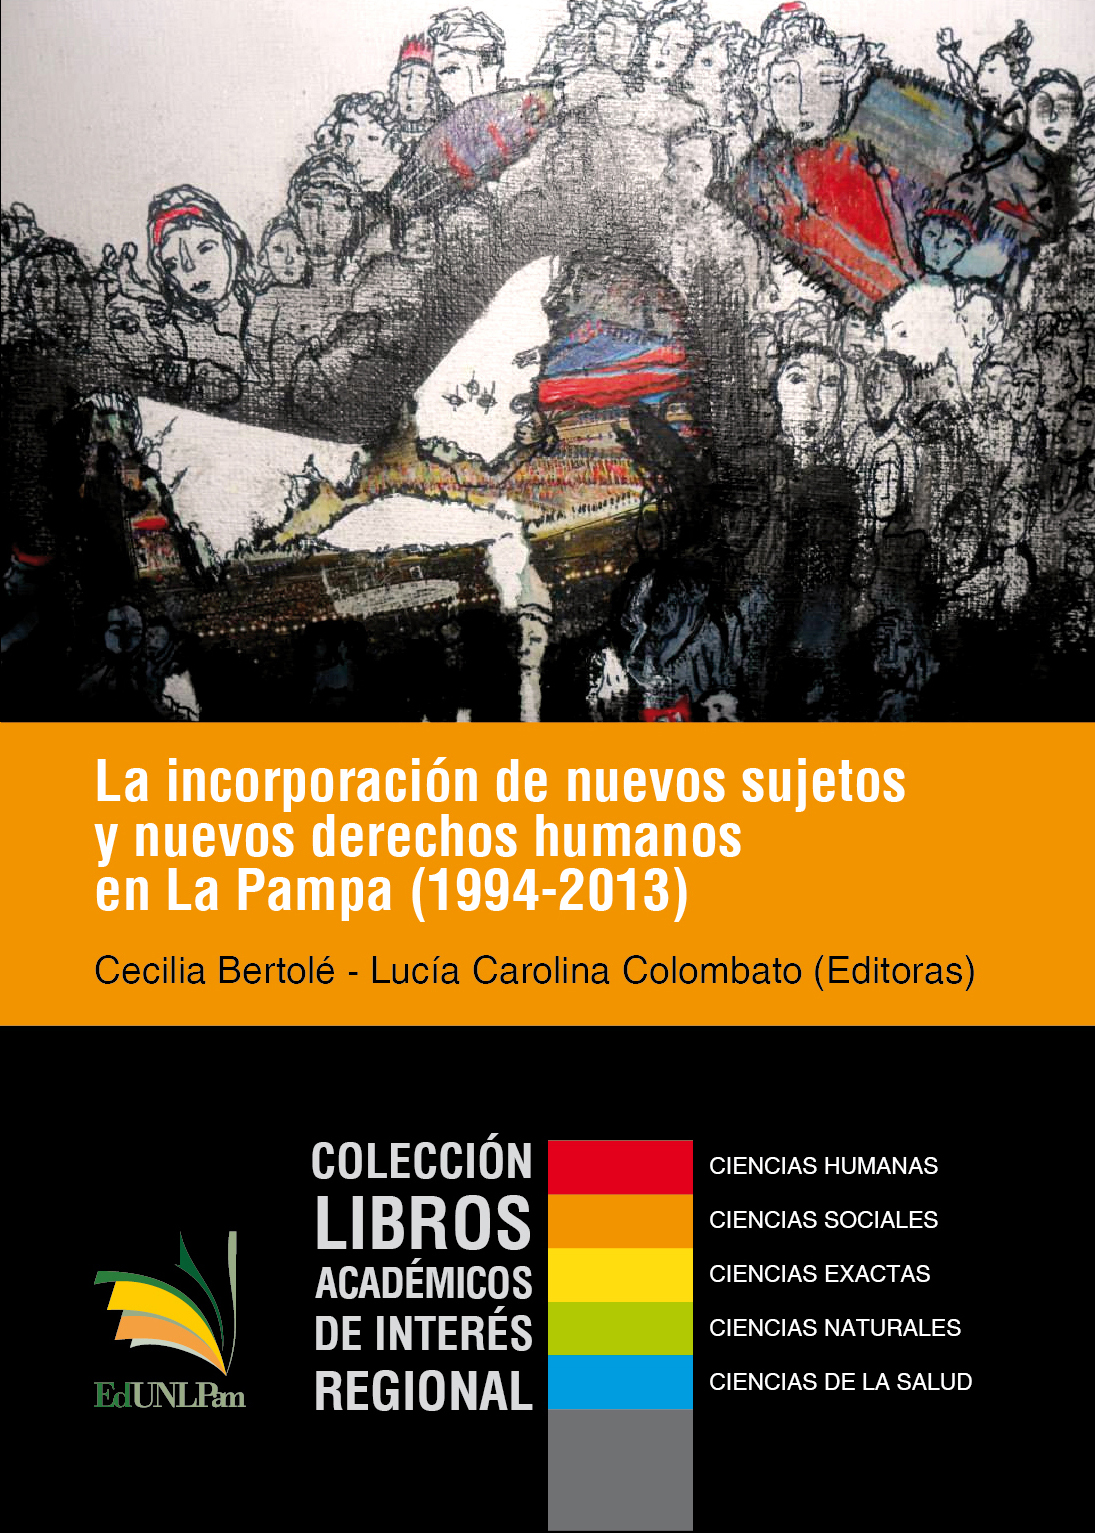 La incorporación de nuevos sujetos y nuevos derechos humanos en La Pampa (1994-2013)